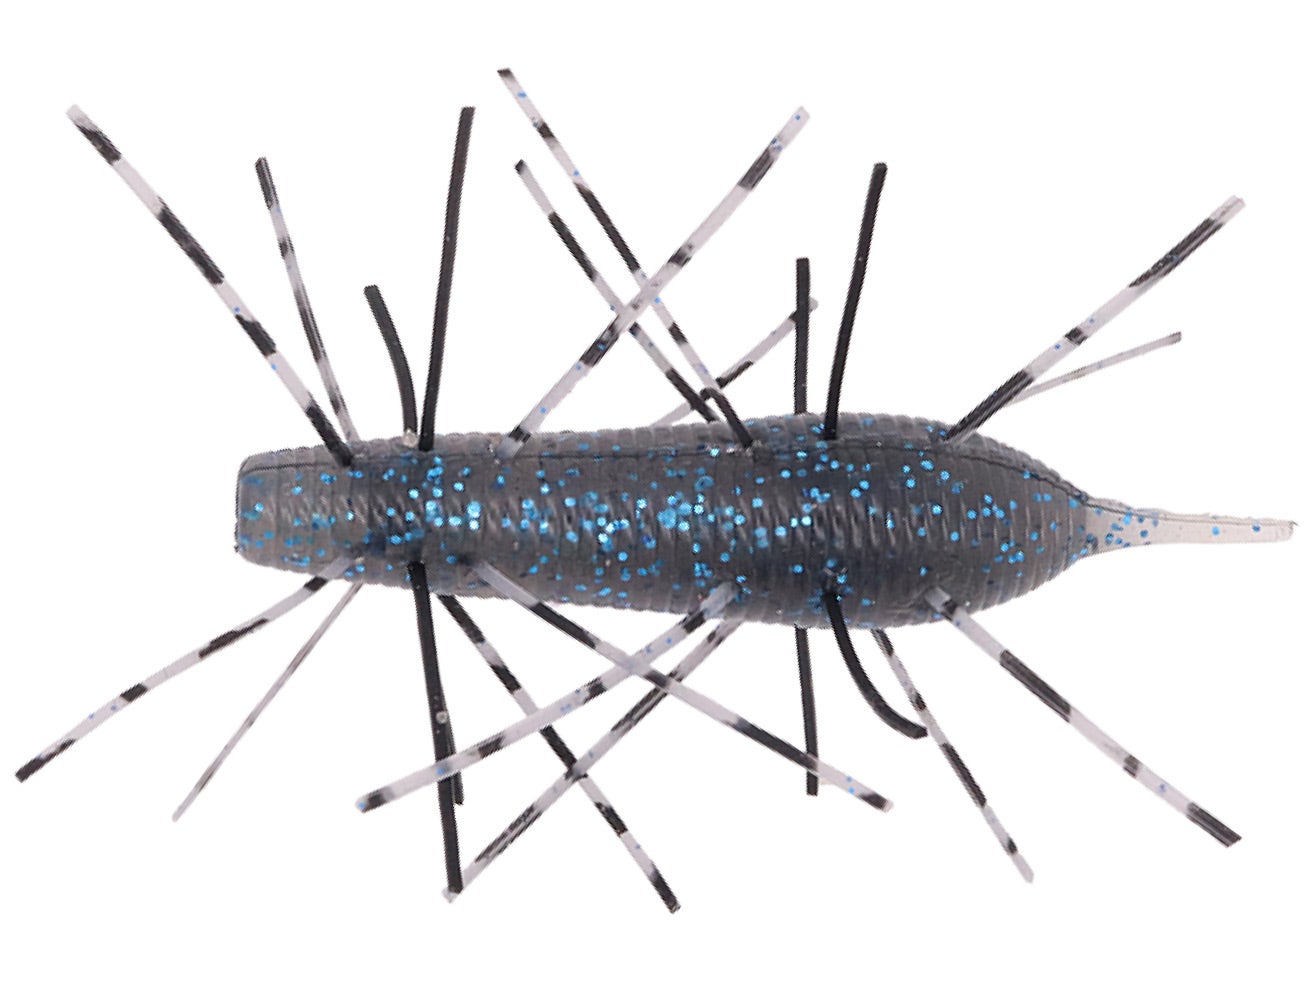 Geecrack Imo Kemushi Floating Stick Worm – Tackle Addict